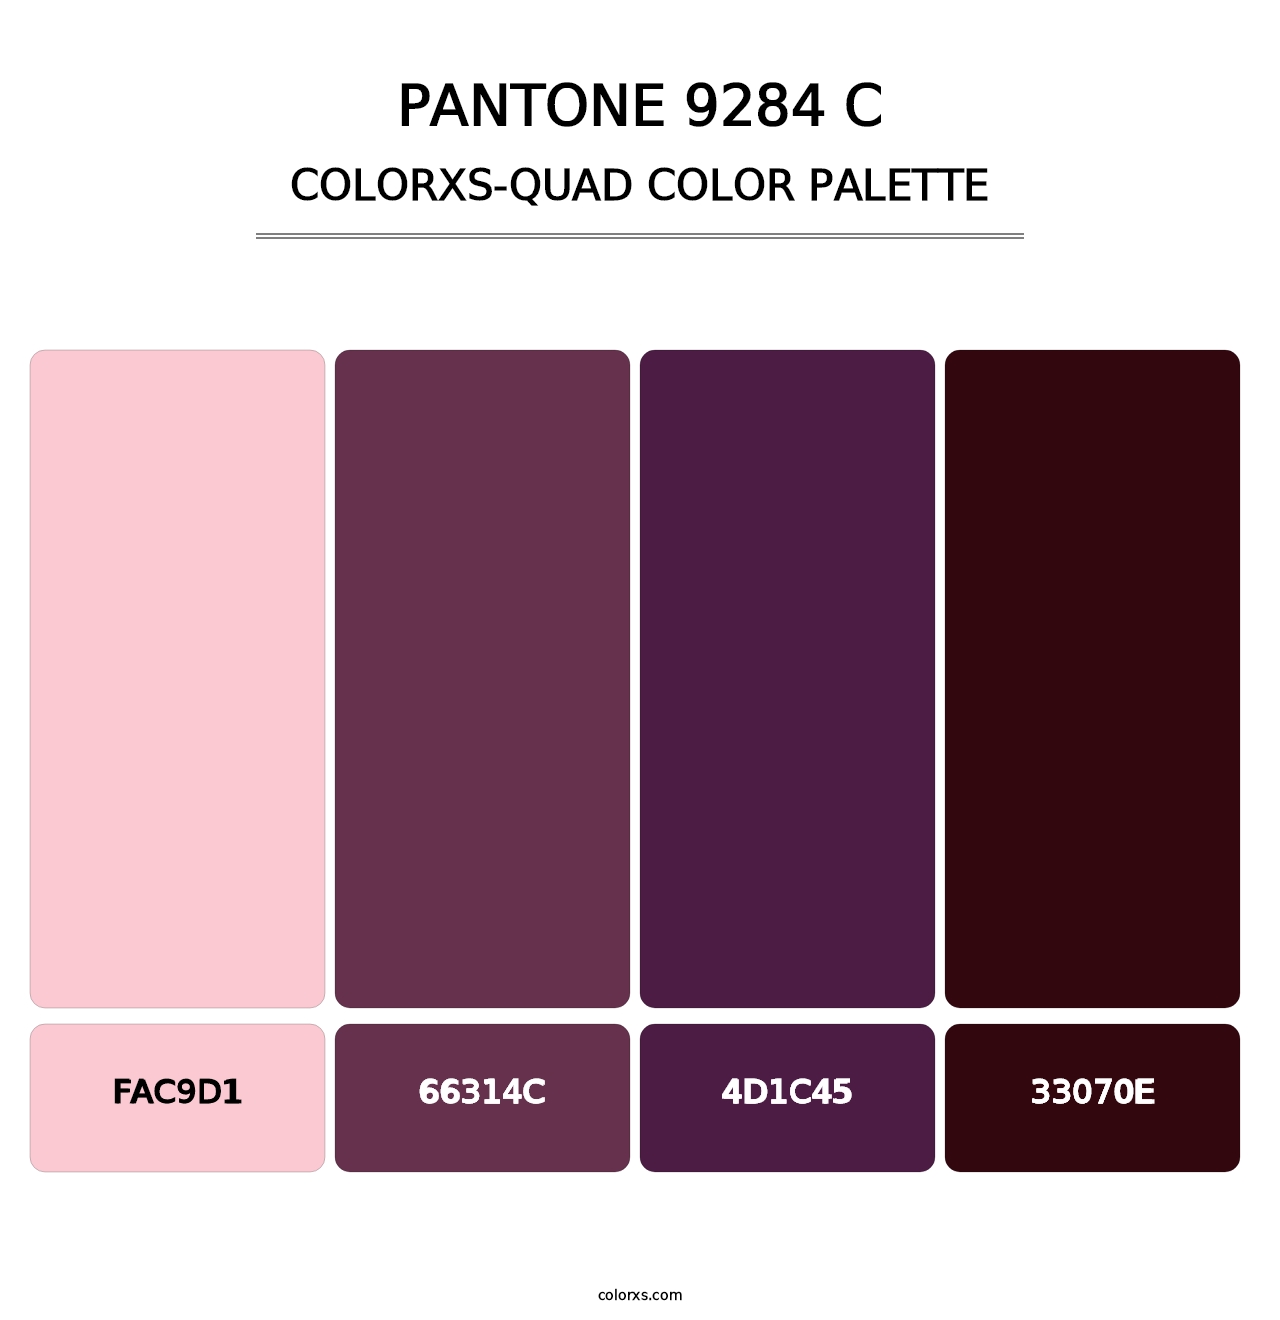 PANTONE 9284 C - Colorxs Quad Palette